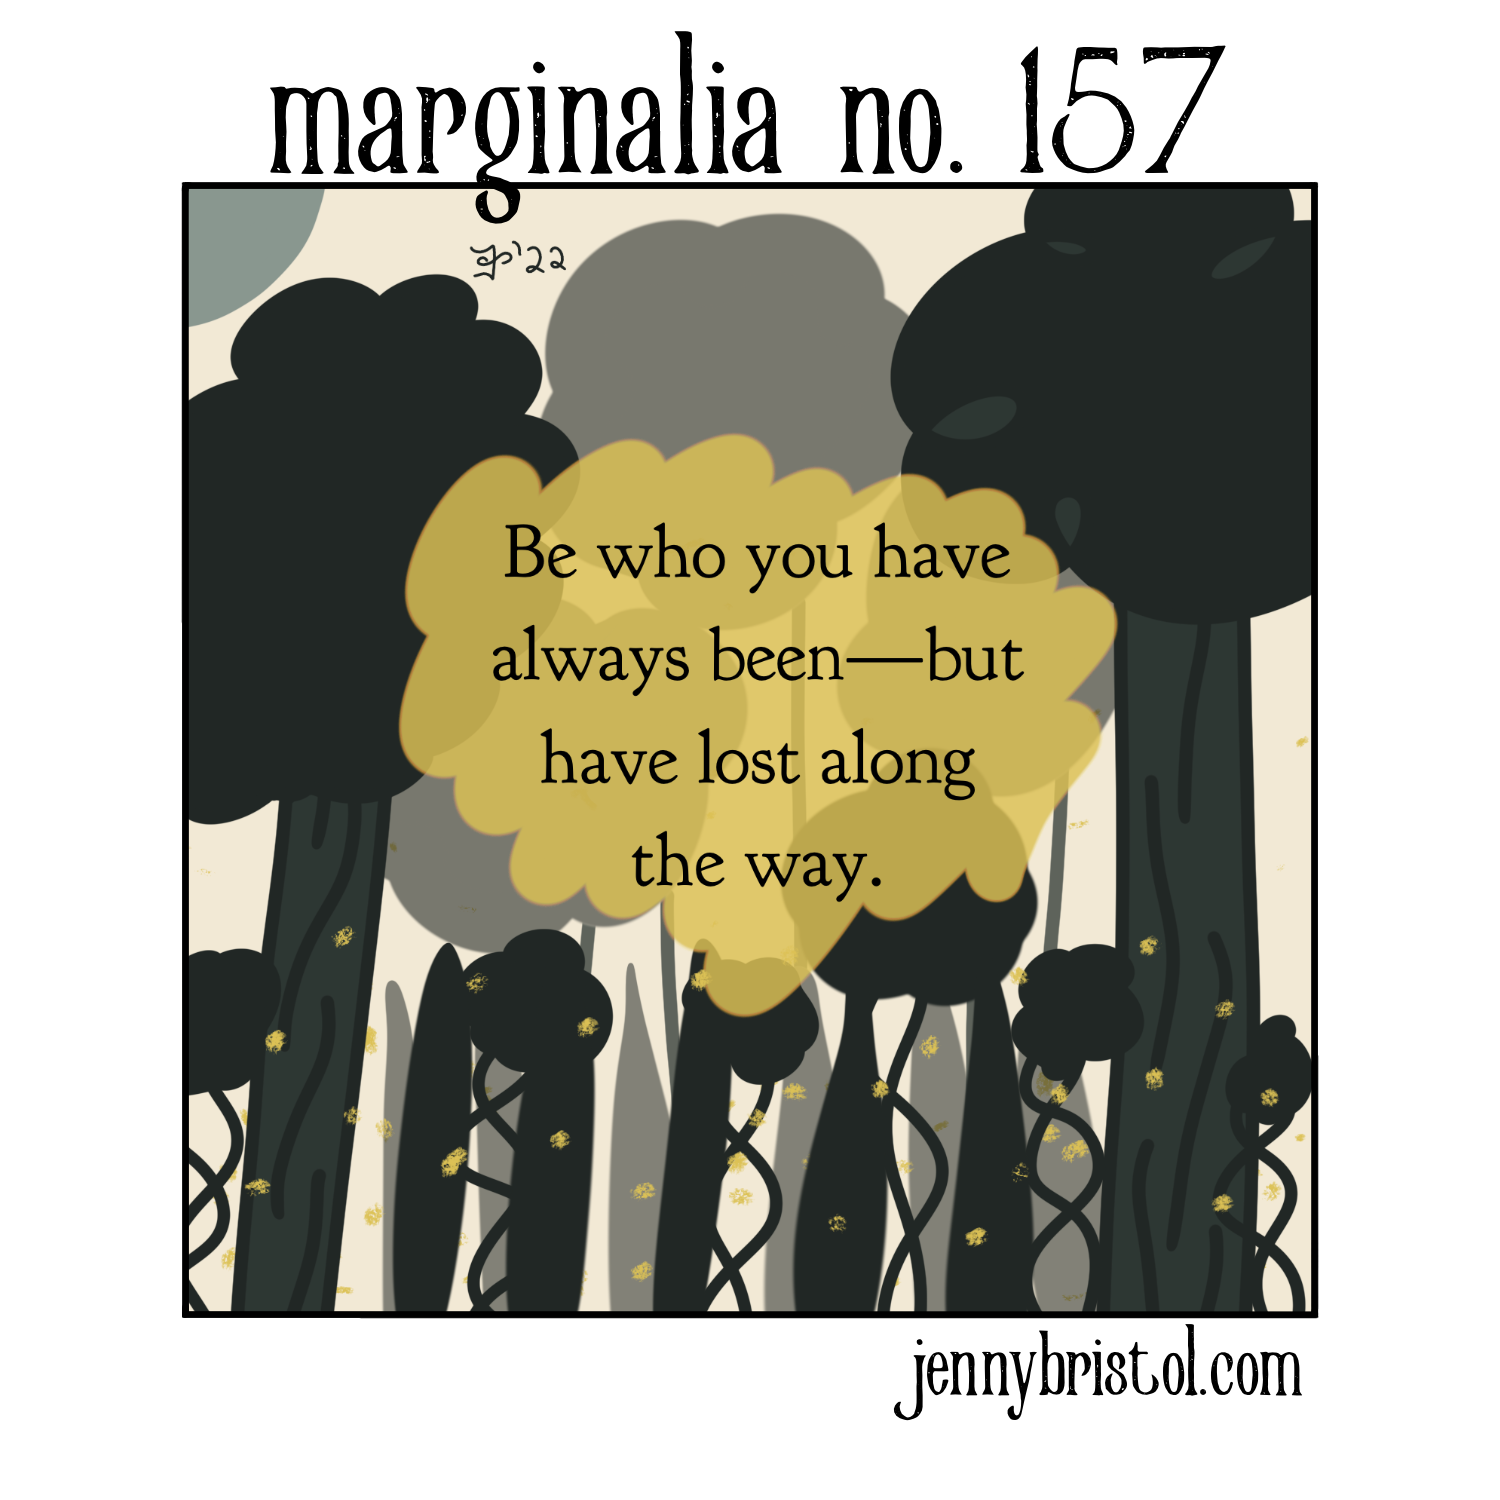 Marginalia_No._157